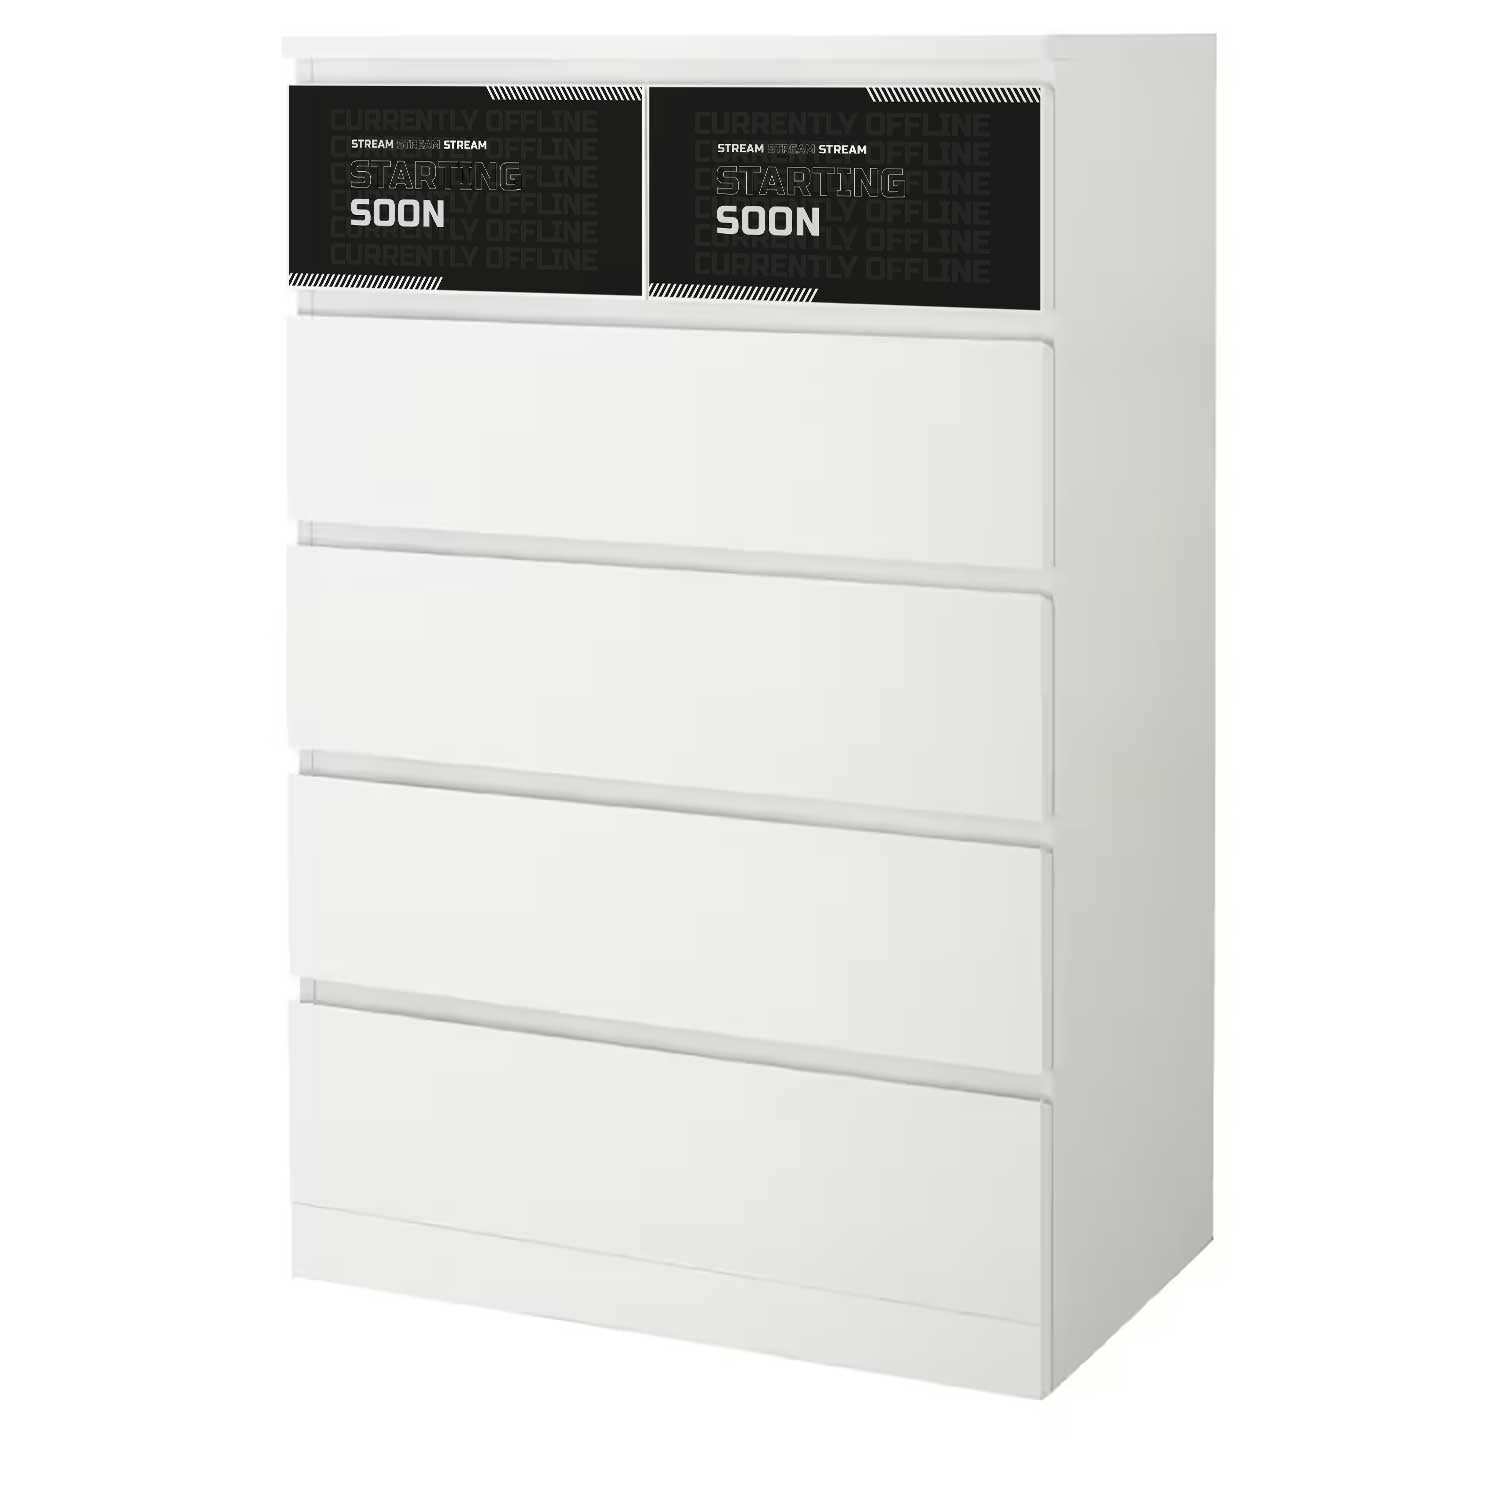 Möbelfolie für IKEA MALM Kommode 6-Schubladen 80x123 'Stream Starting Soon'